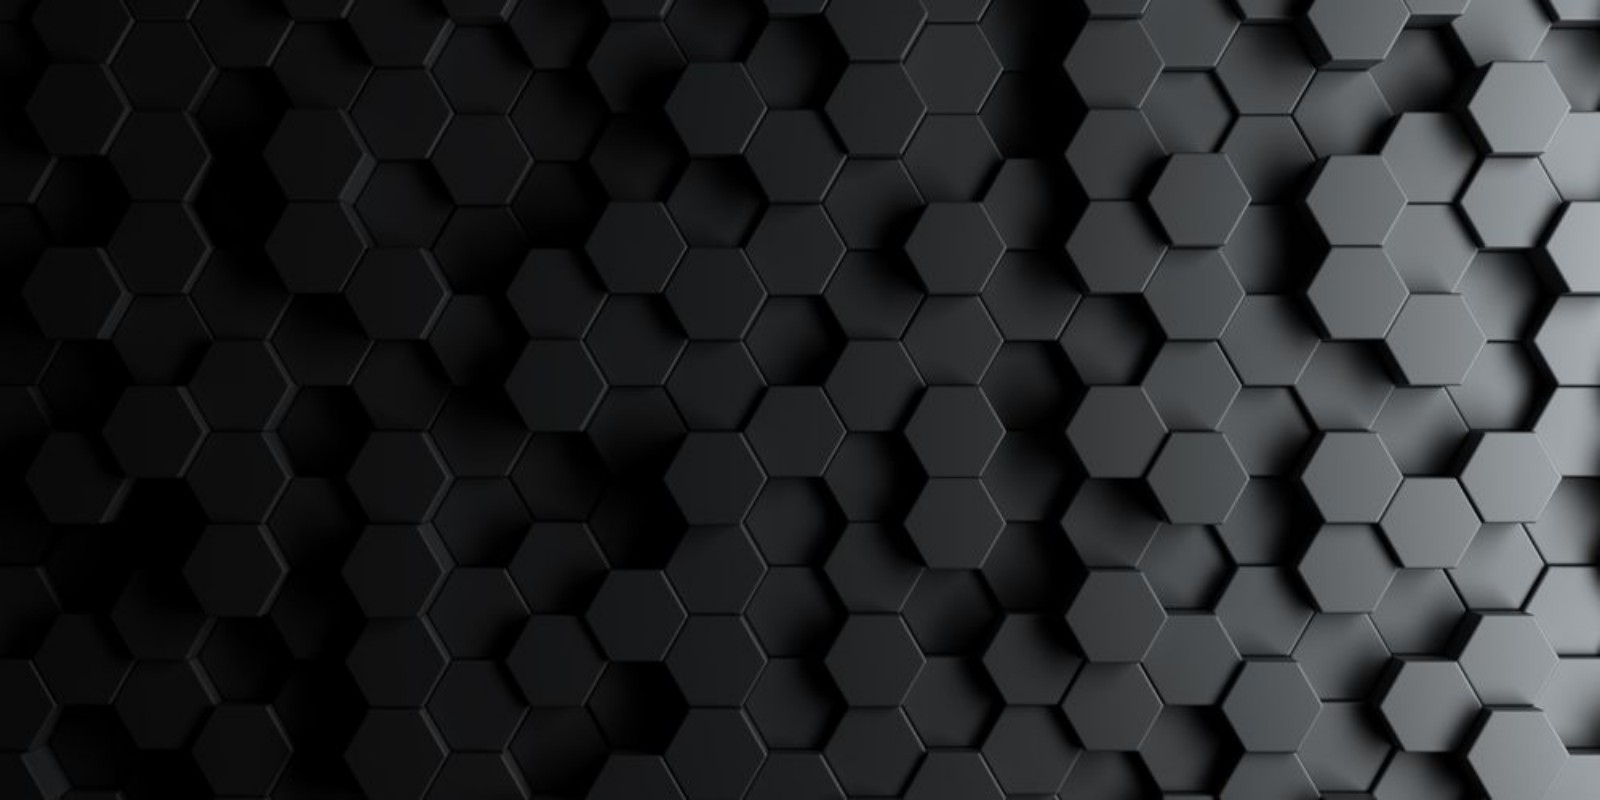 Image de Dark hexagon wallpaper or background